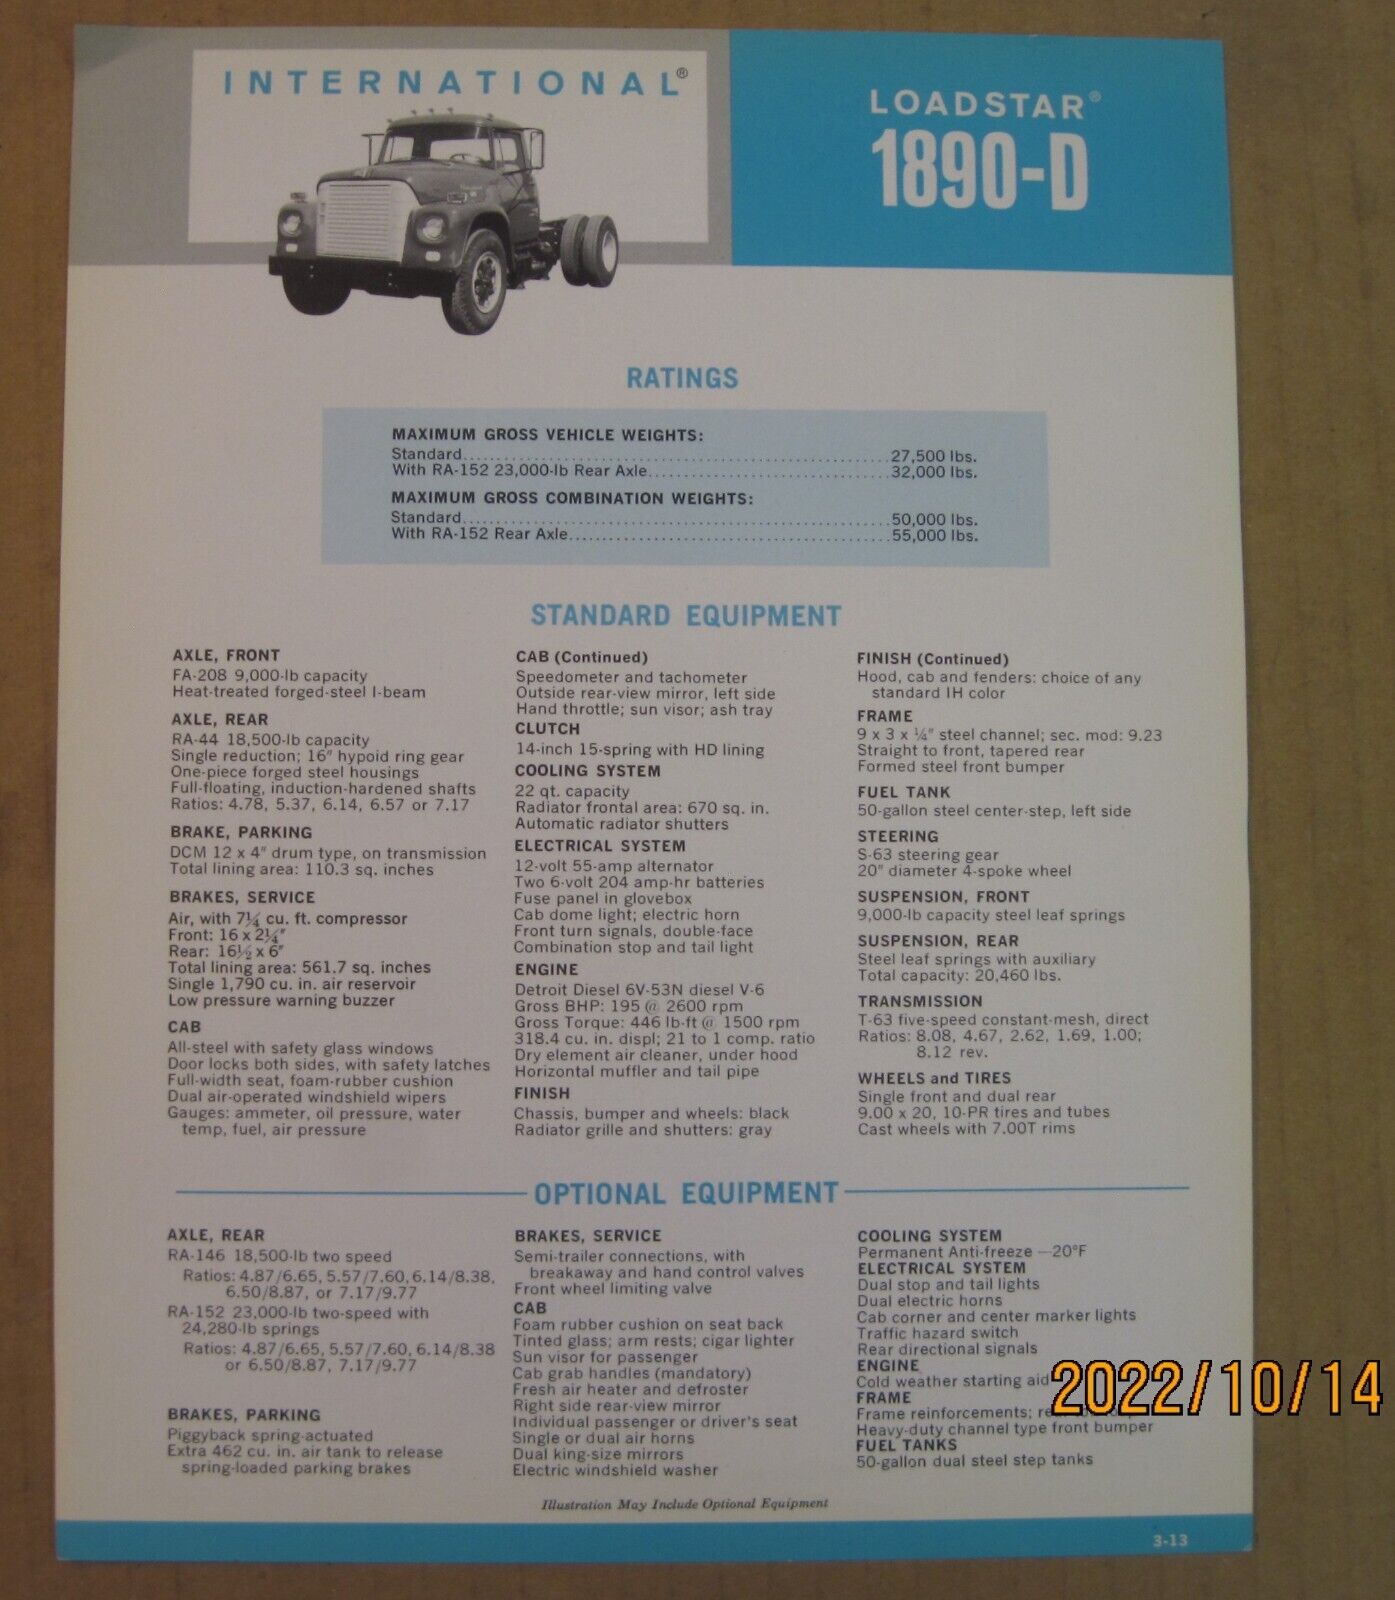 International Loadstar 1890-d Truck Specification Brochure